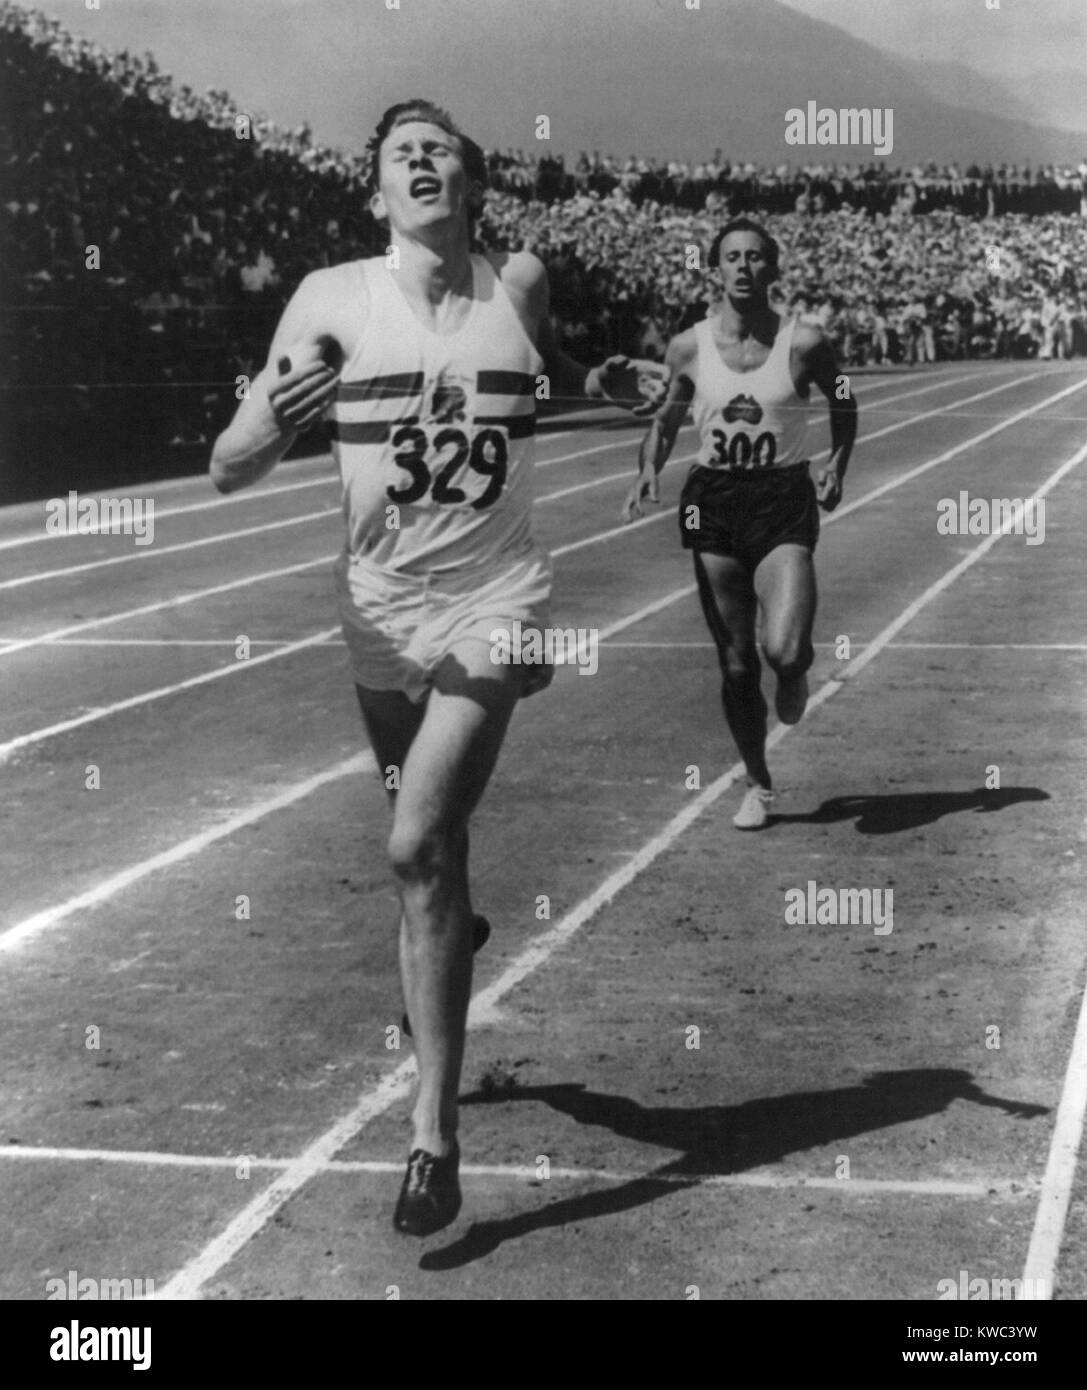 Roger Bannister führt John Landy von Australien über die Ziellinie bei British Empire Games 1954. Es war die erste Meile Rennen in der Geschichte, in der zwei Läufer unter vier Minuten beendet. Vancouver, B.C. (BSLOC 2015 14 218) Stockfoto